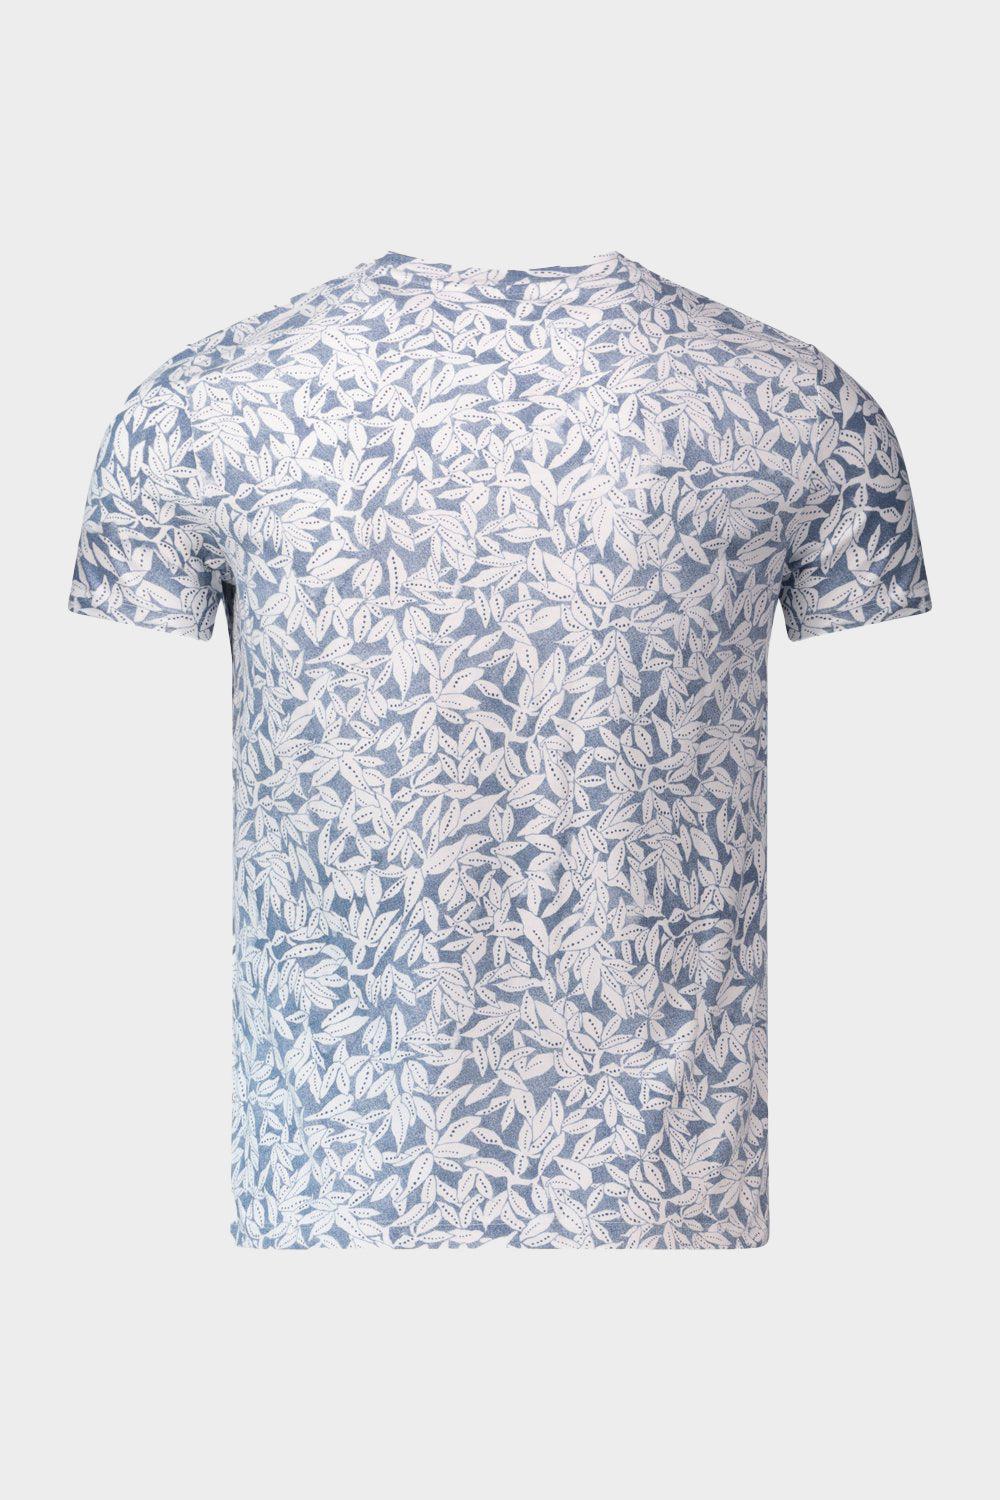 חולצת טי שירט לגברים הדפס עלים MARC O'POLO Vendome online | ונדום .